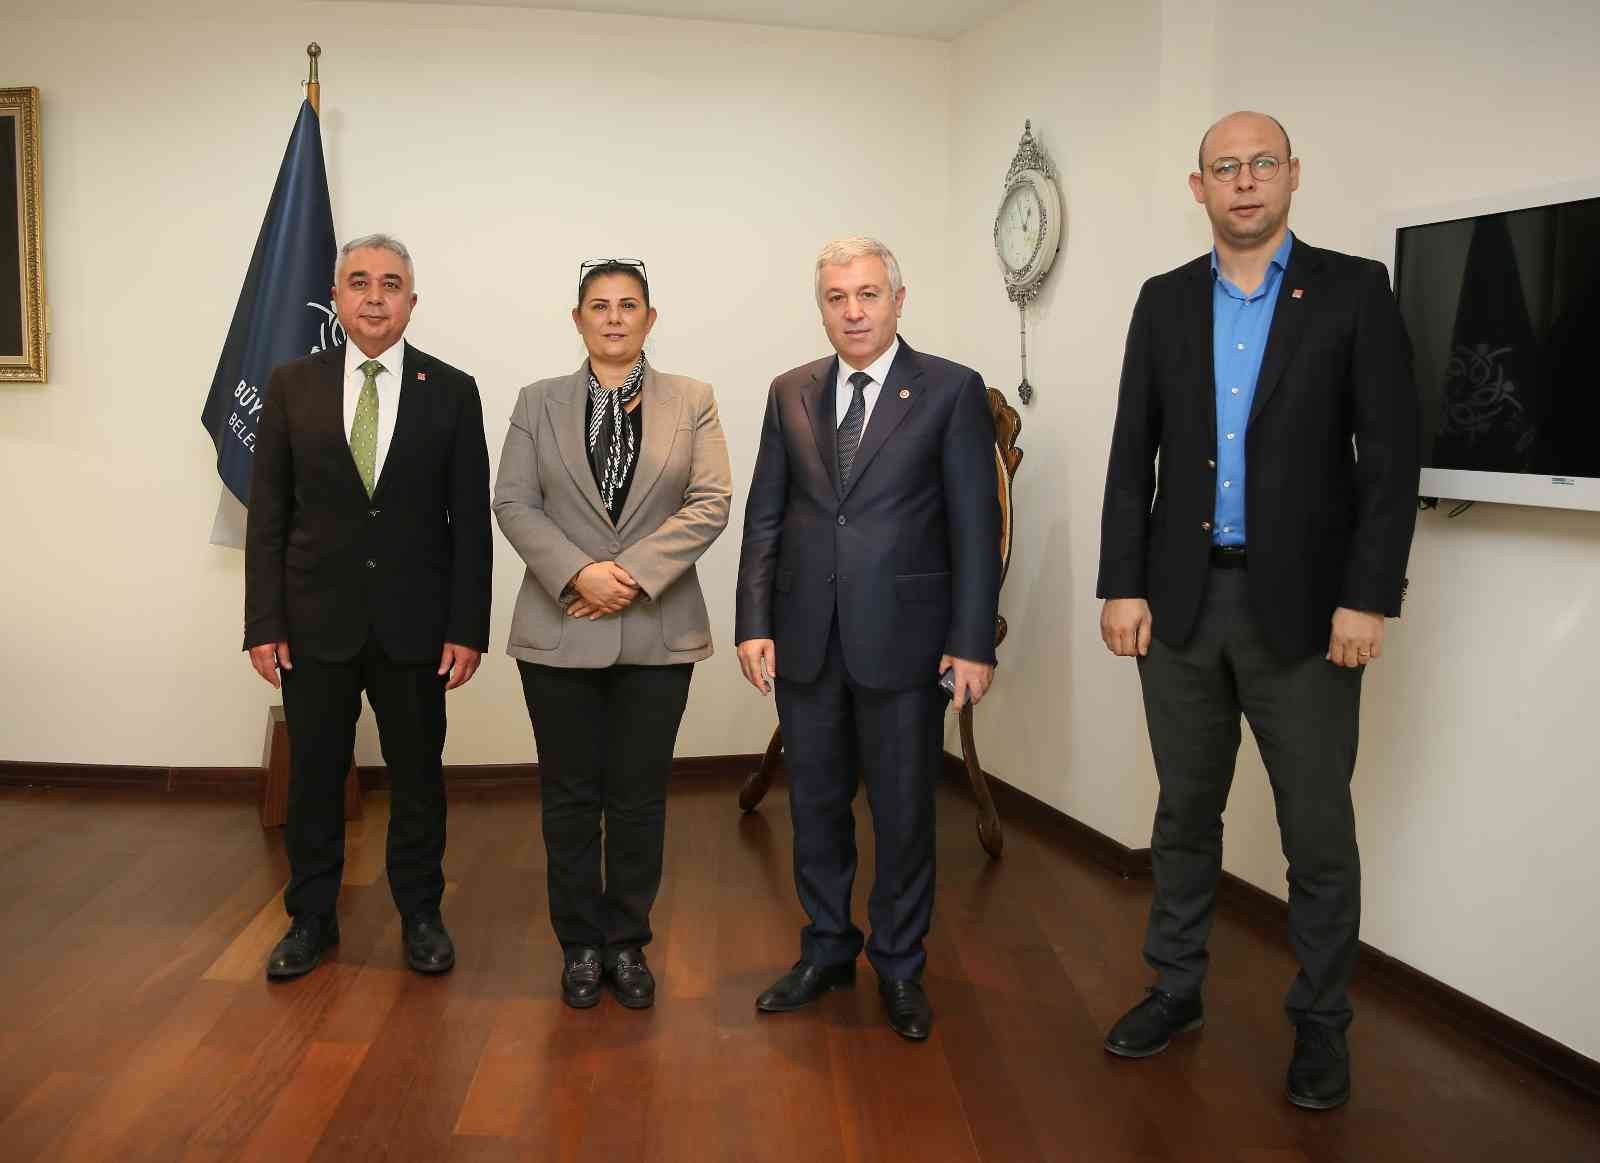 CHP Kayseri milletvekili Arık, Başkan Çerçioğlu ile görüştü